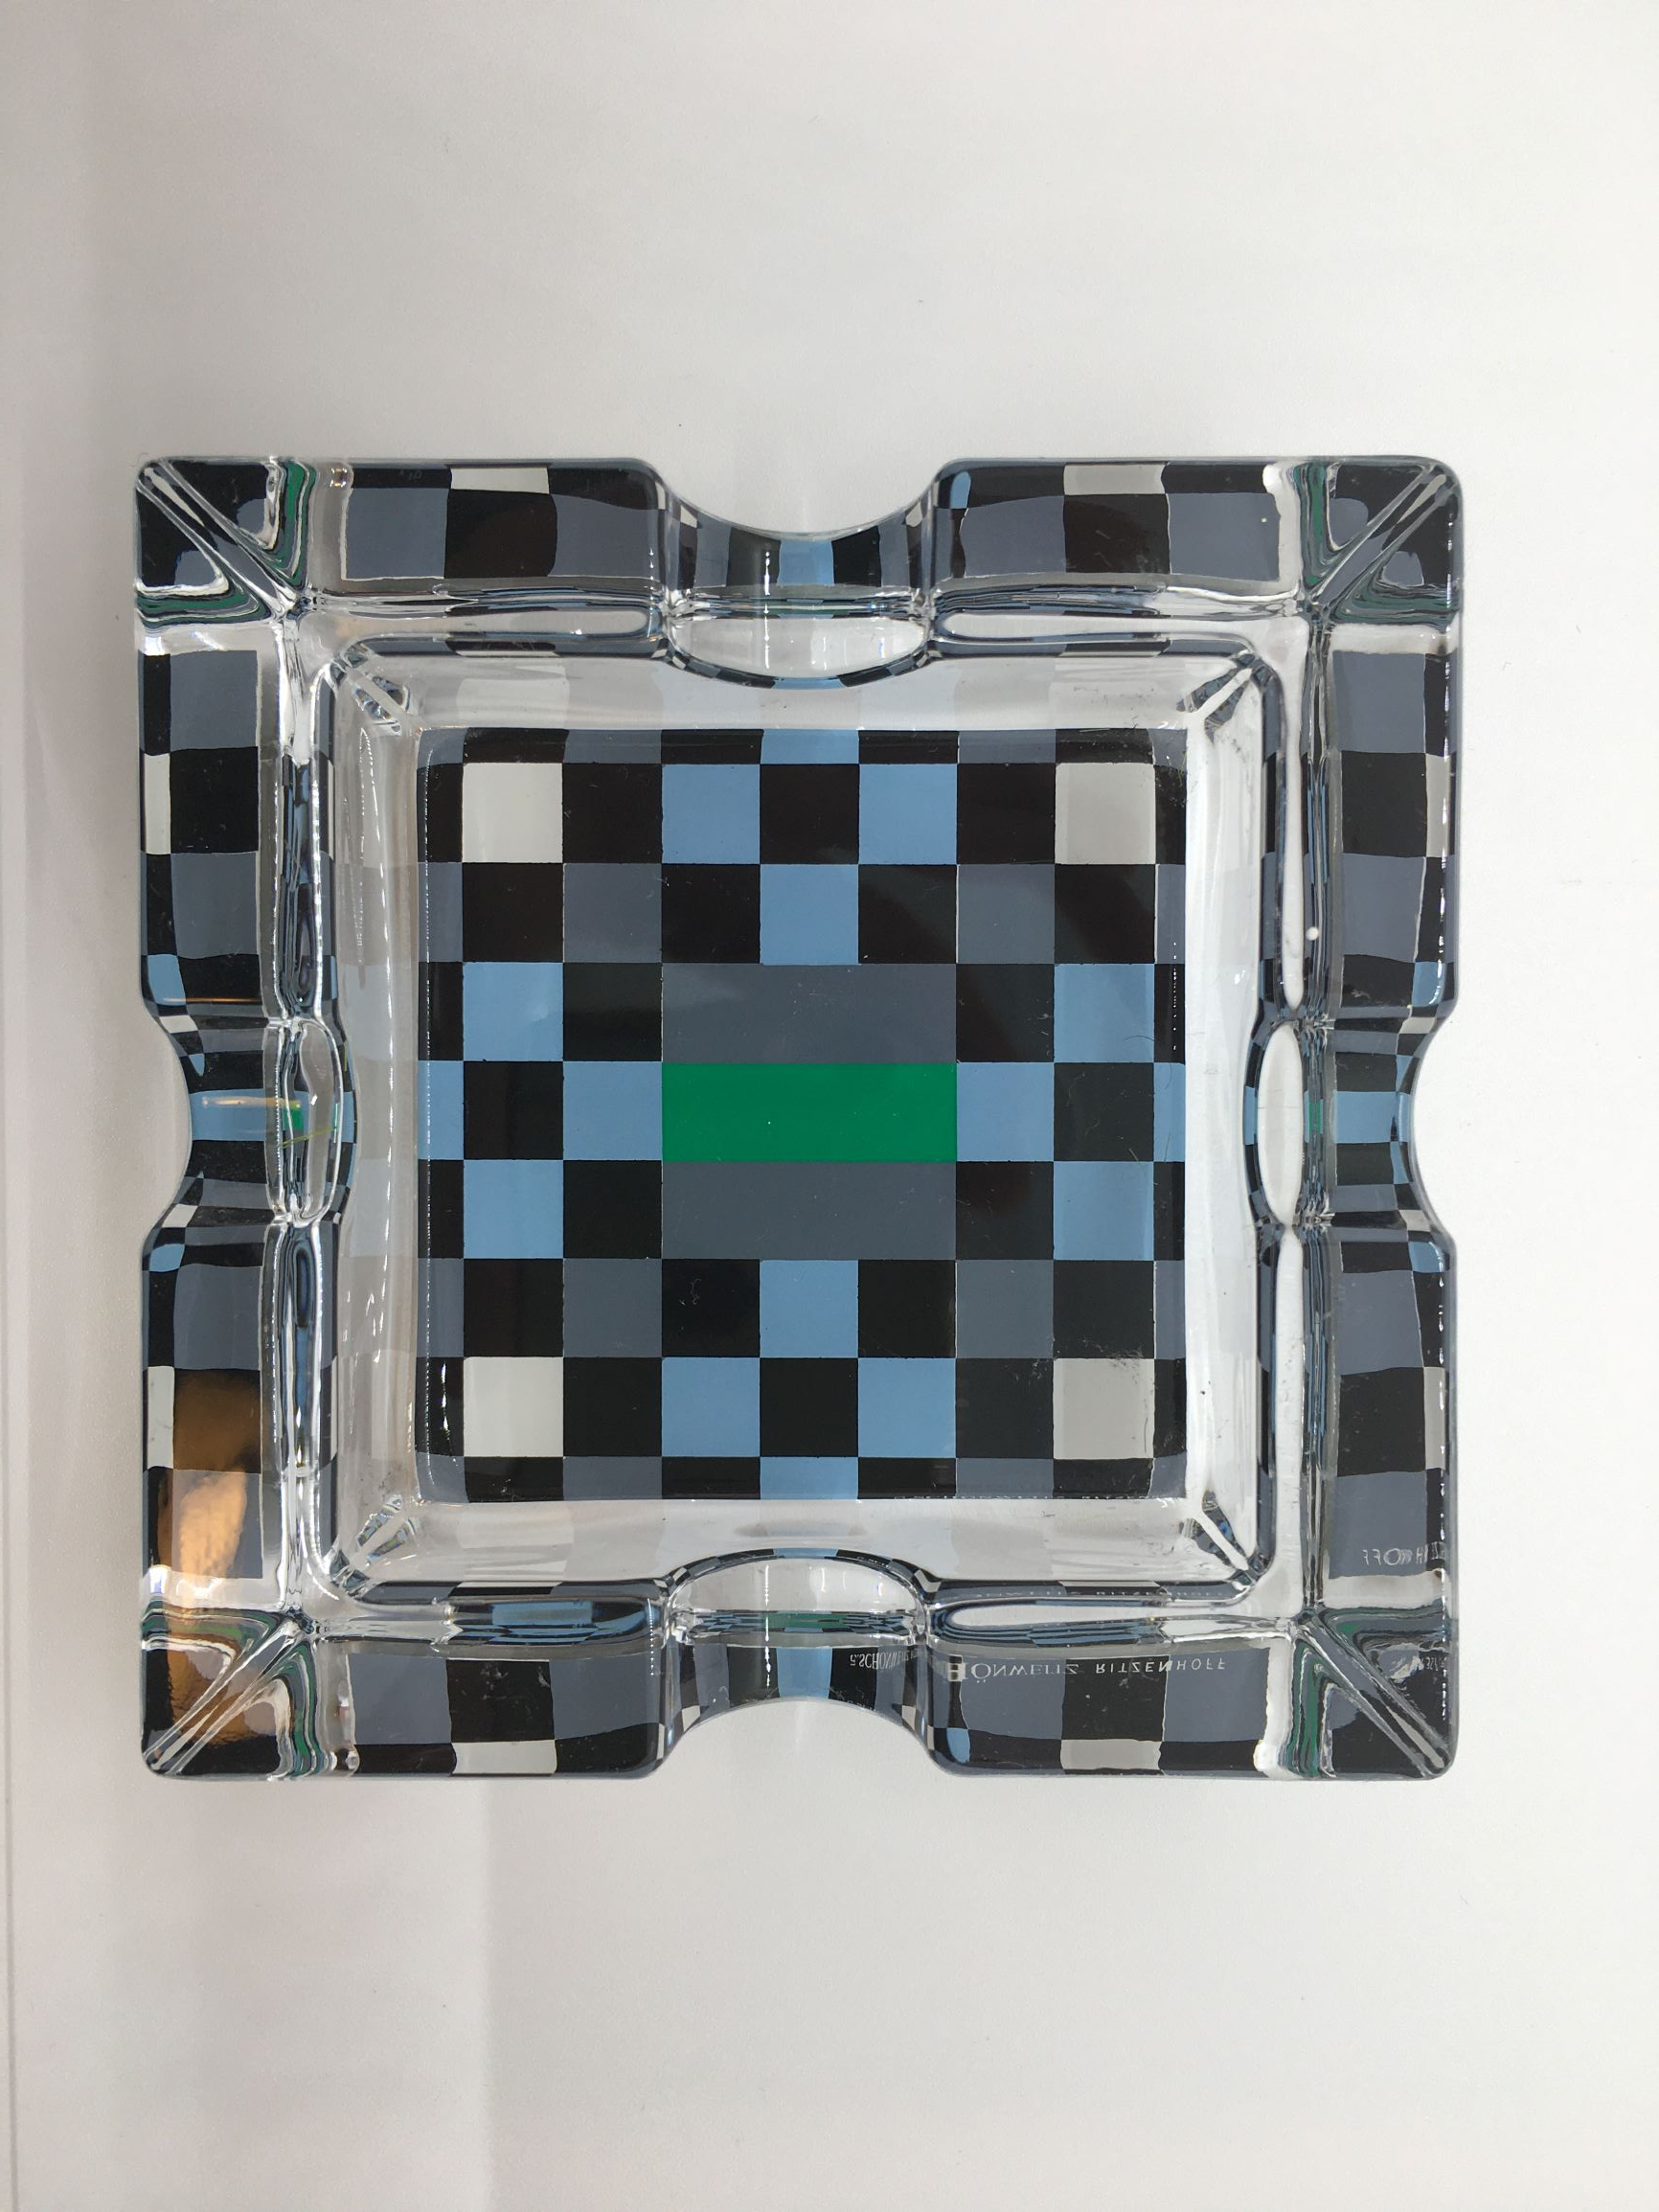 Posacenere quadrato in cristallo con decoro progettato da E. Schonweitz nel 2002, Edizione Limitata, della linea "Smoking" di Ritzenhoff. Custodito in una scatola di legno con cerniere e chiusura in metallo Dimensioni: mm. 100 x 100